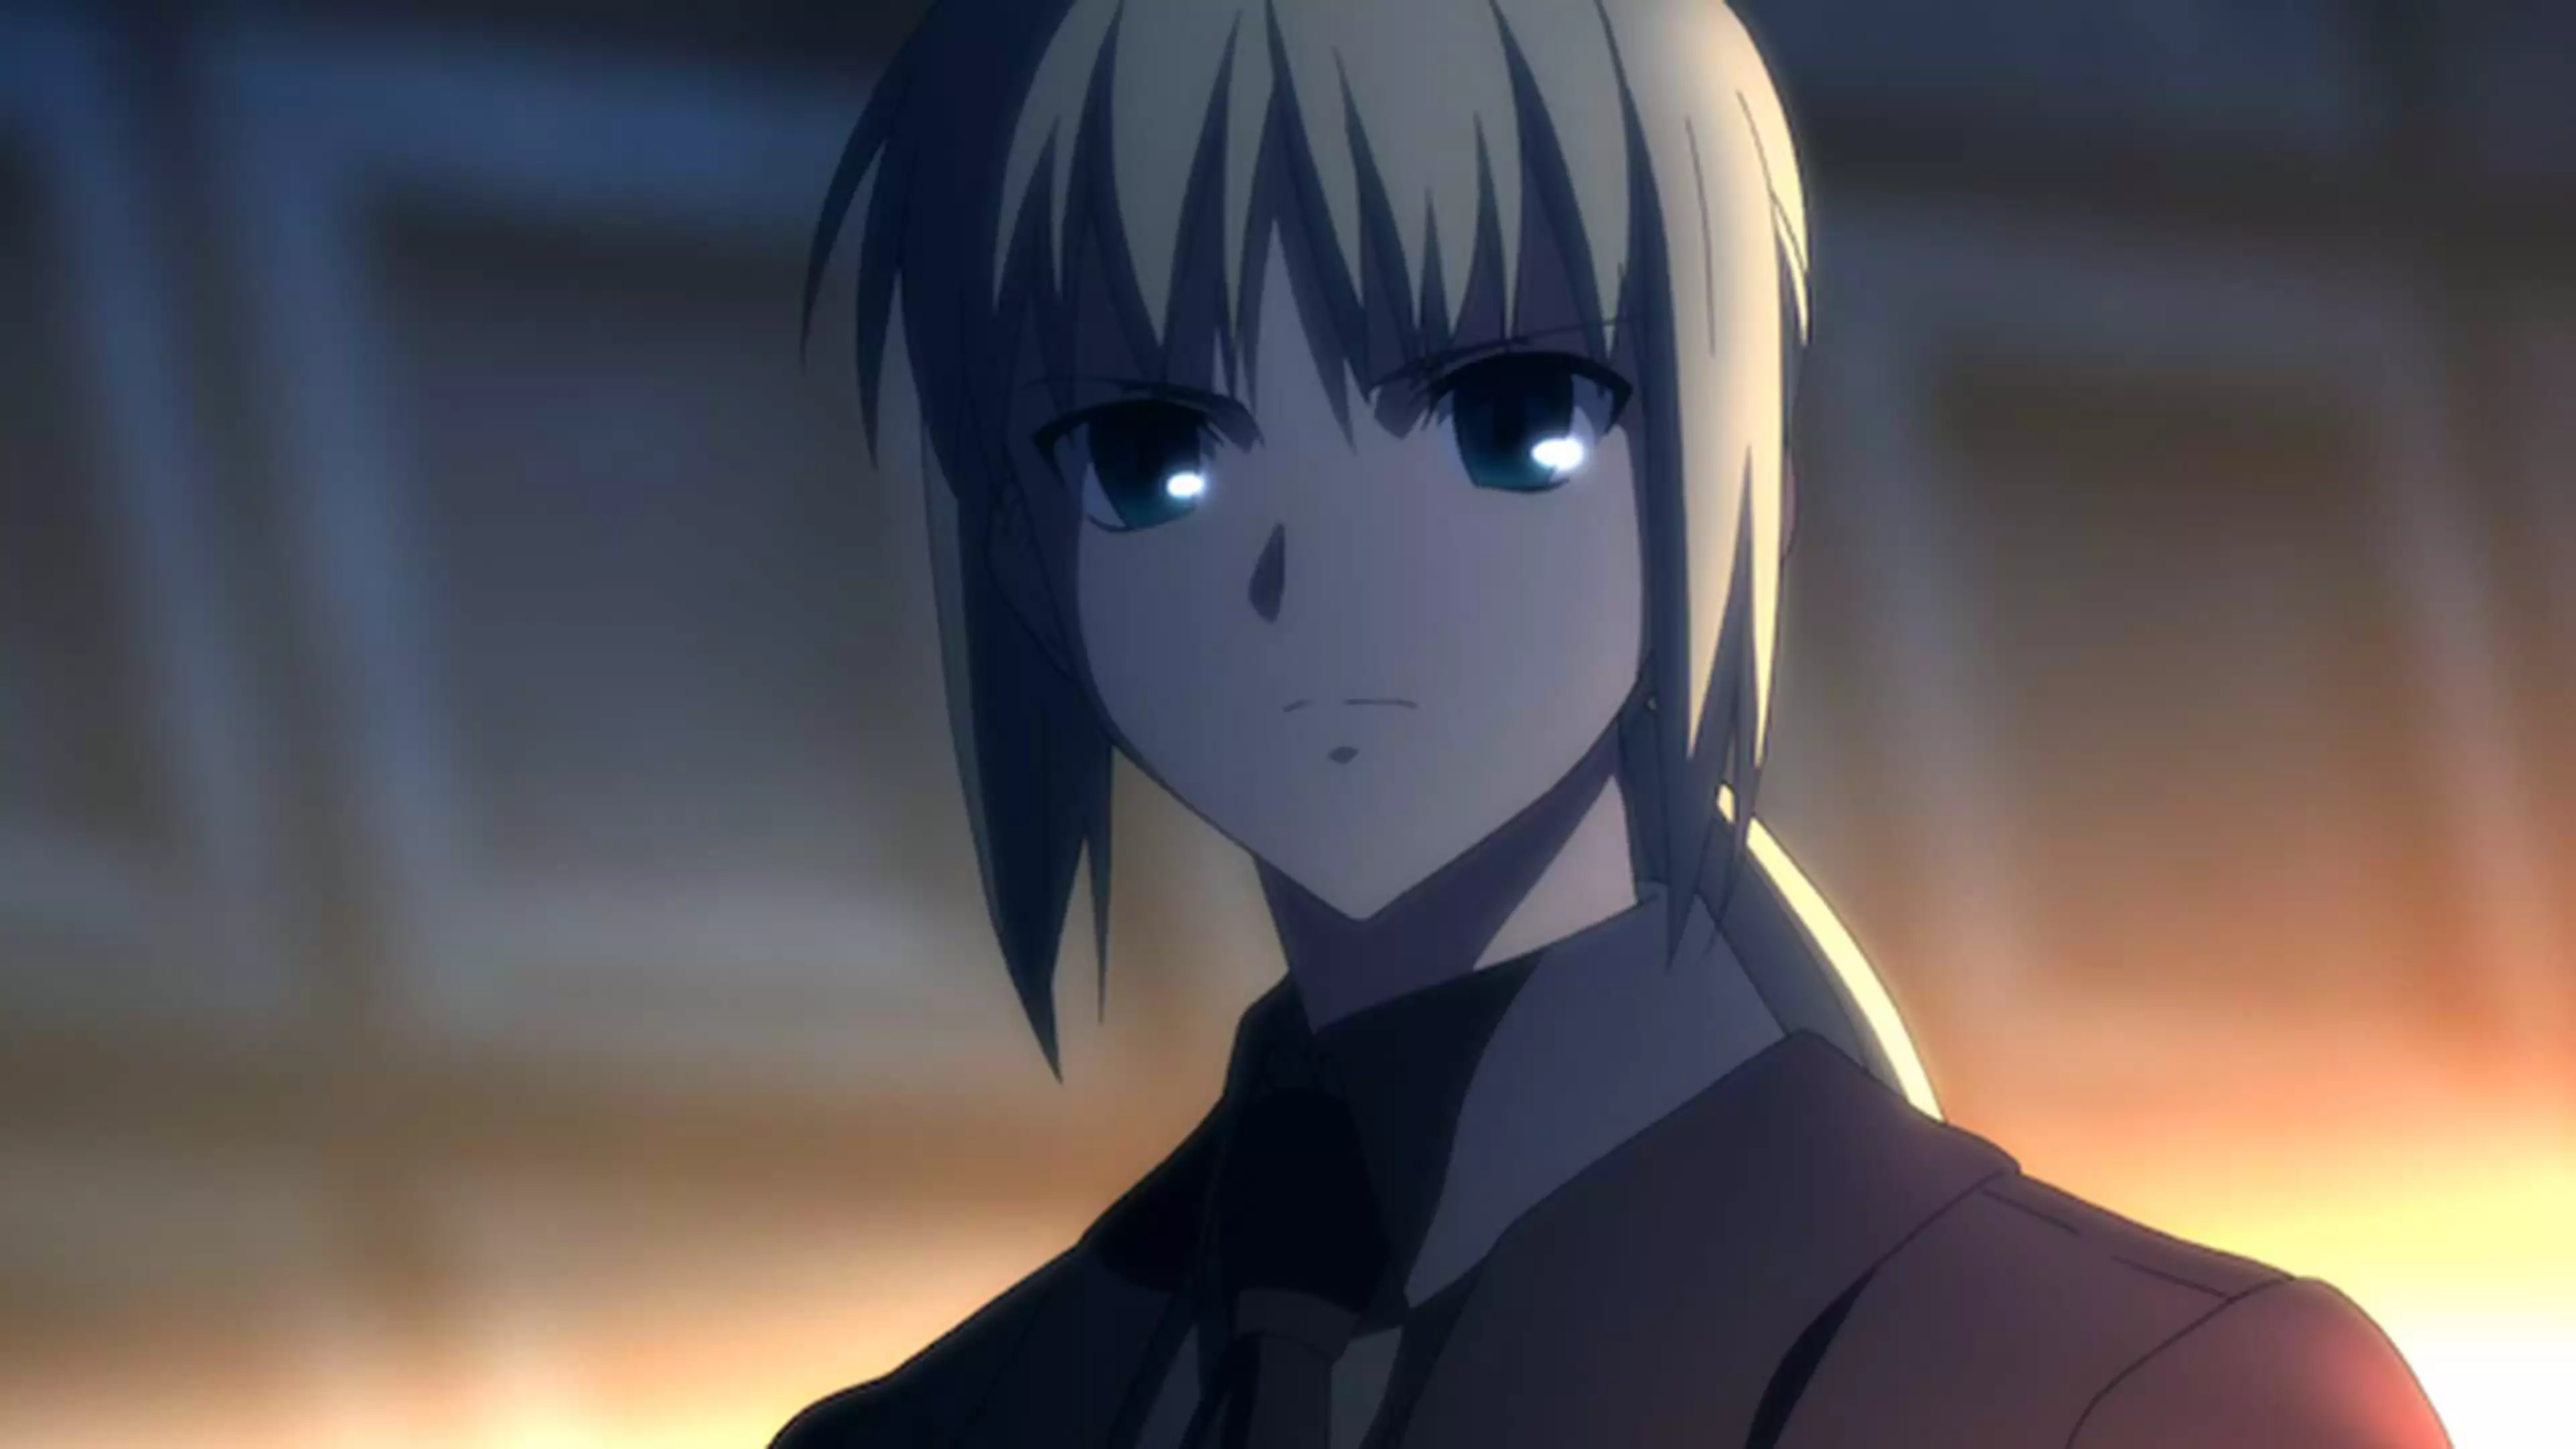 Fate Zero 第六話 謀略の夜 アニメ 11年 の動画視聴 あらすじ U Next